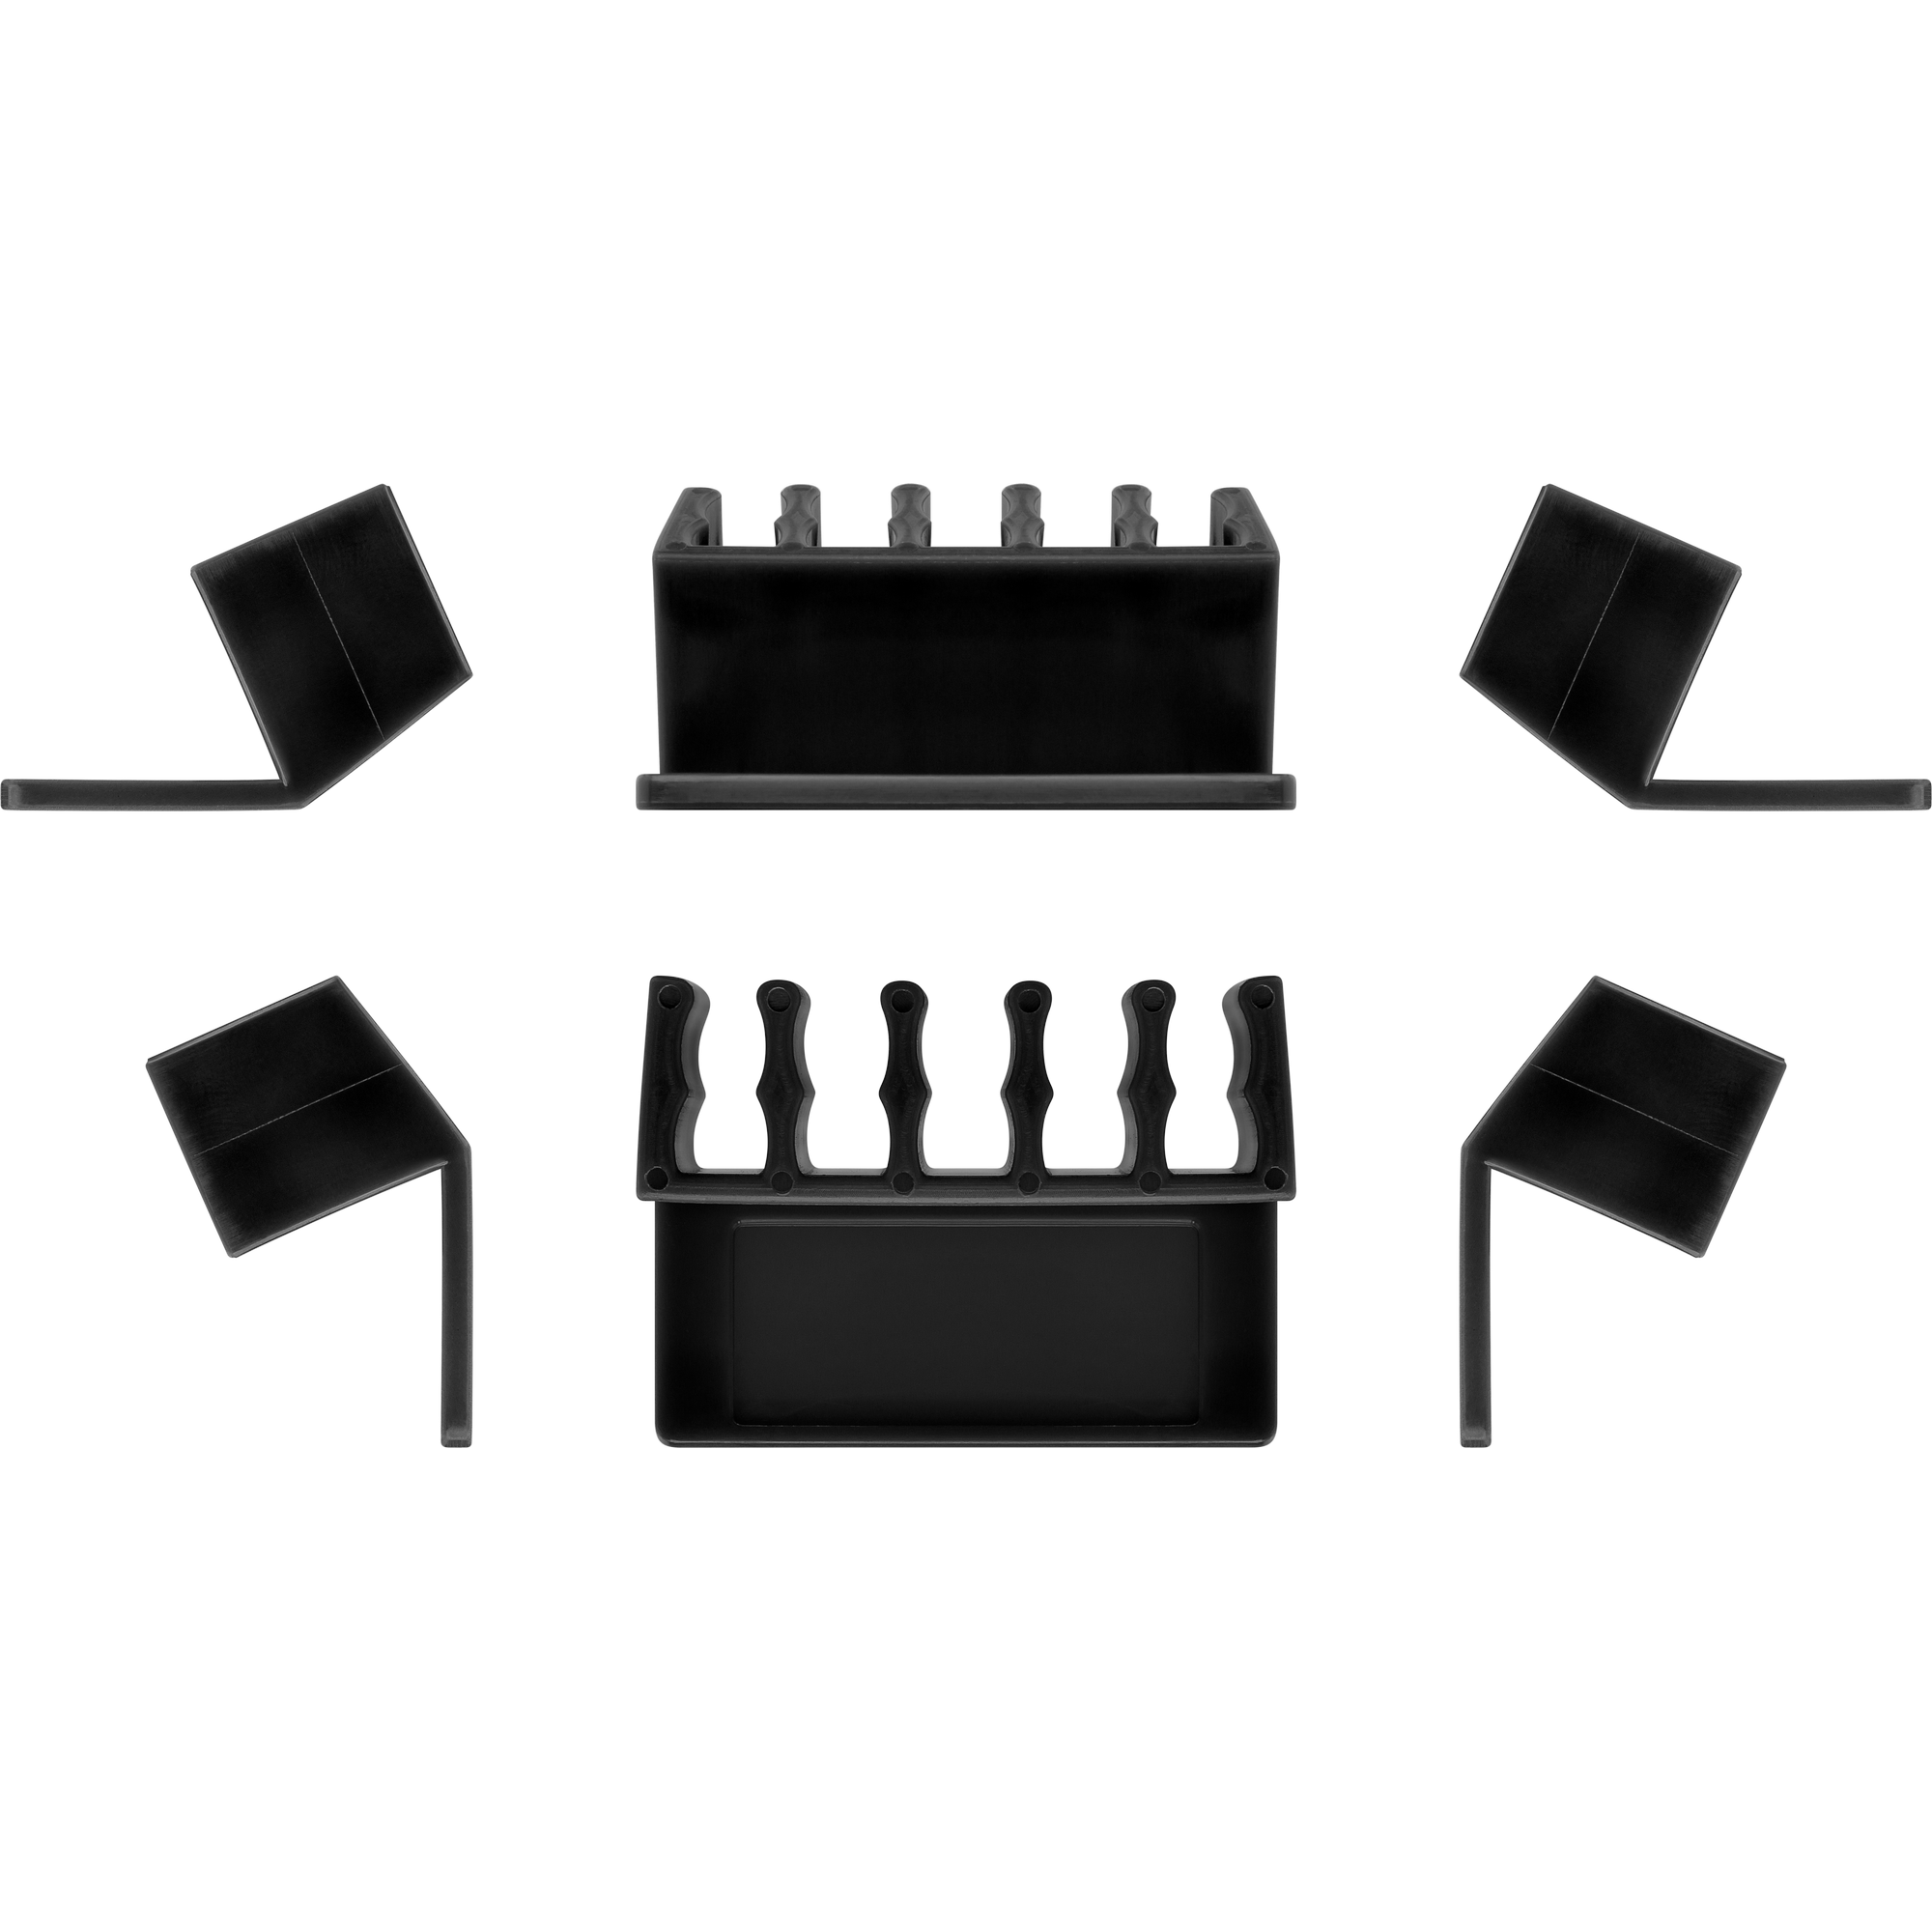 Kabelhalter 'Kabelmanagement' für Tischkanten 5 Slots, 2er Set + product picture